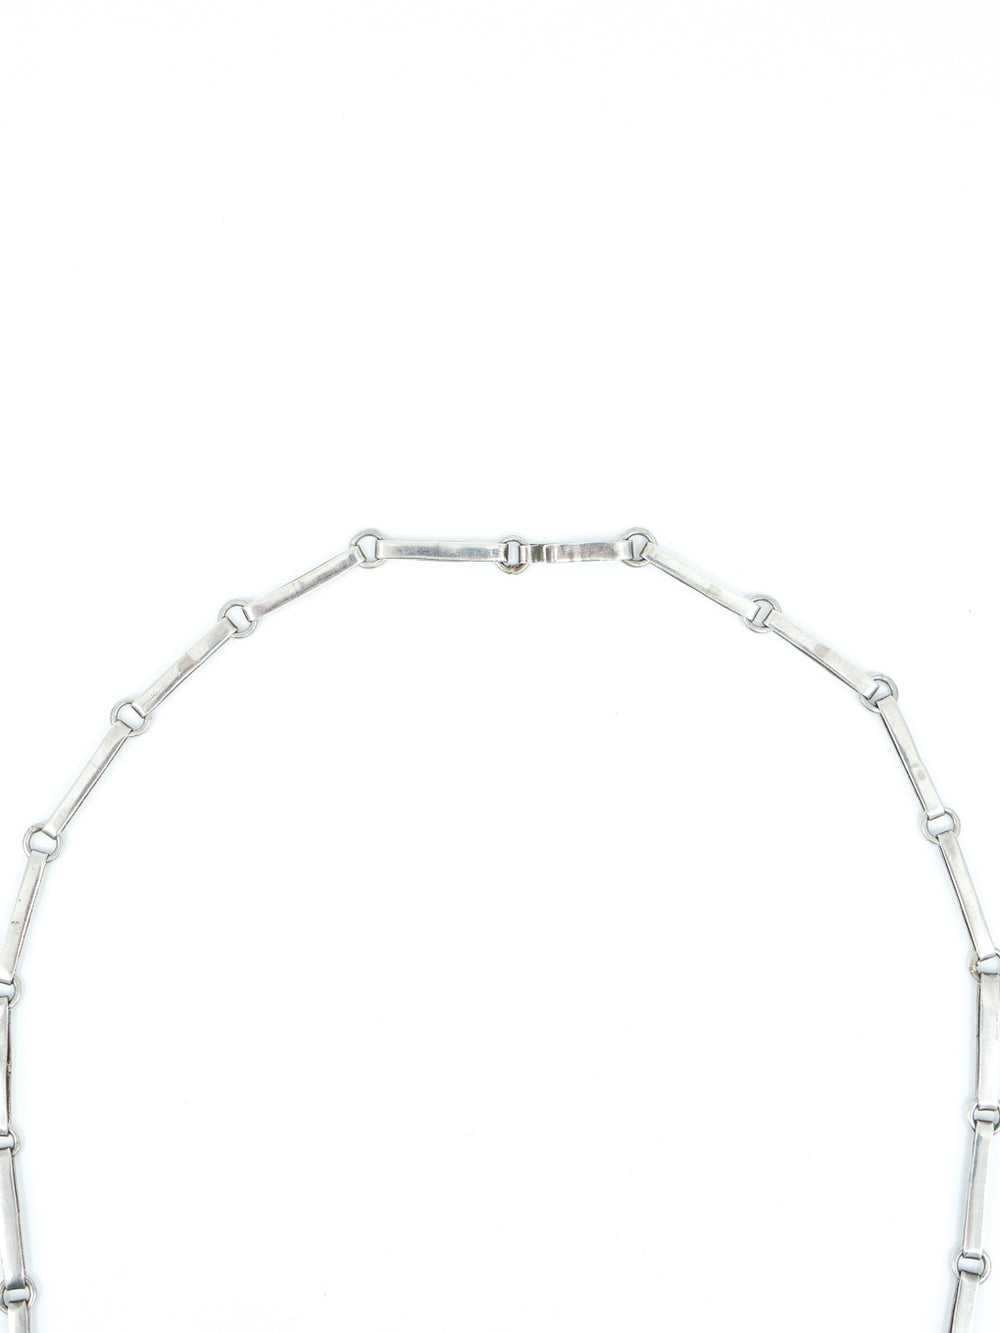 Modernist Sterling Pendant Necklace - image 3